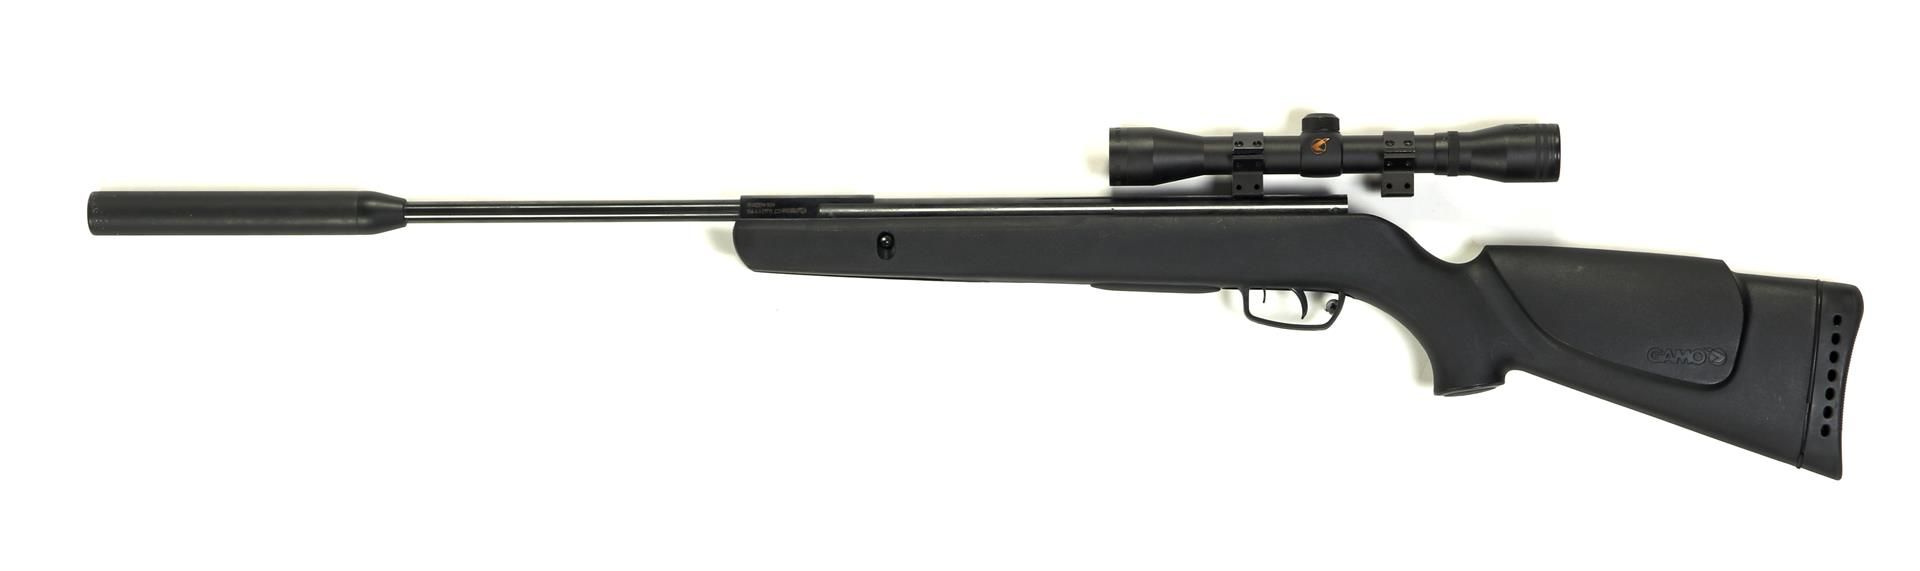 Gamo Shadow RSV air rifle